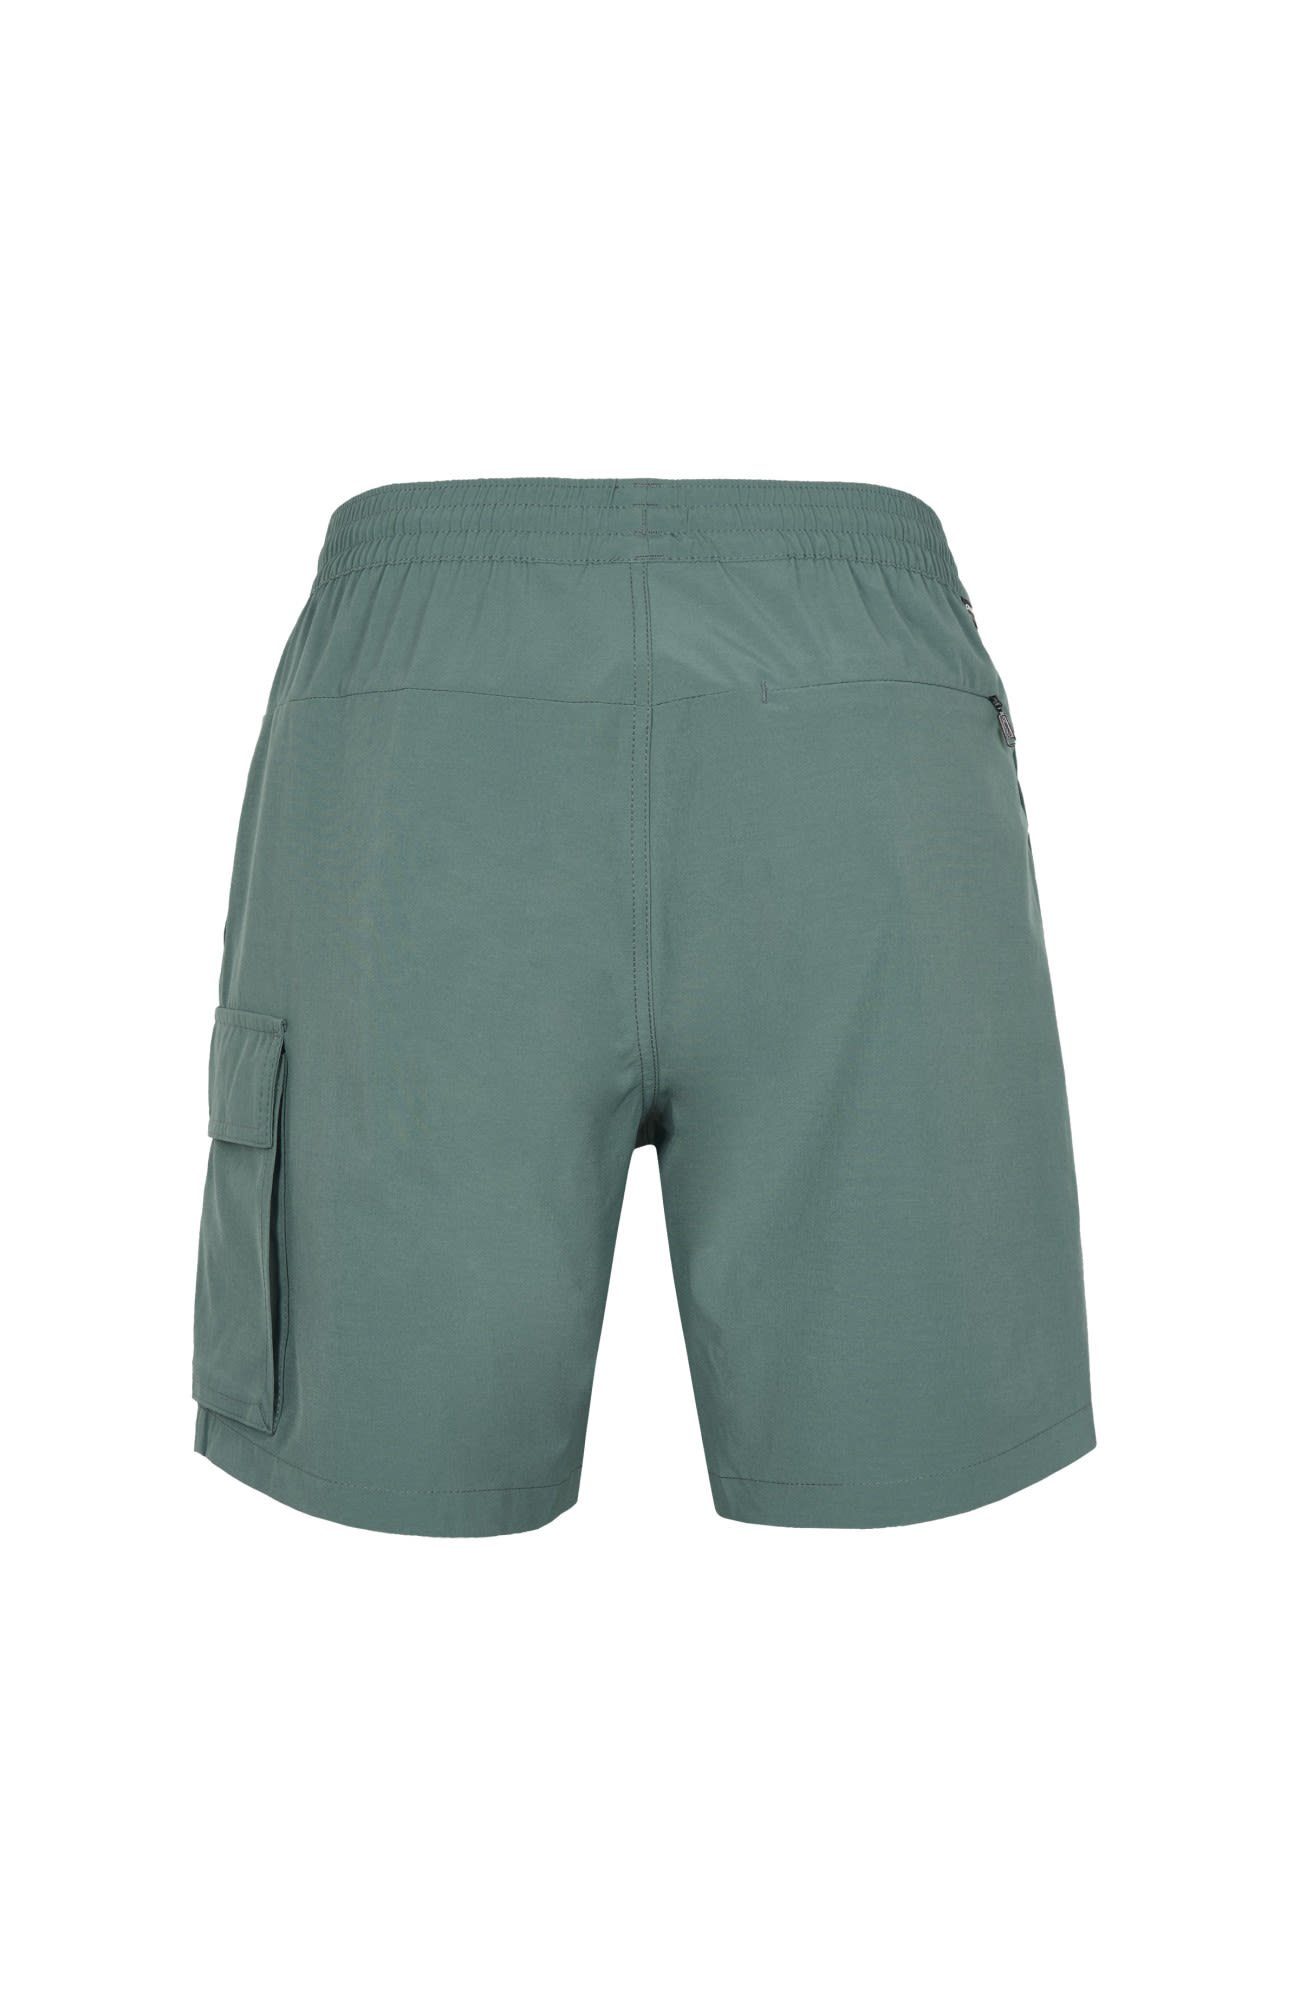 Shorts Shorts North All Strandshorts Hybrid M Atlantic Day Oneill O'Neill 17'' Herren